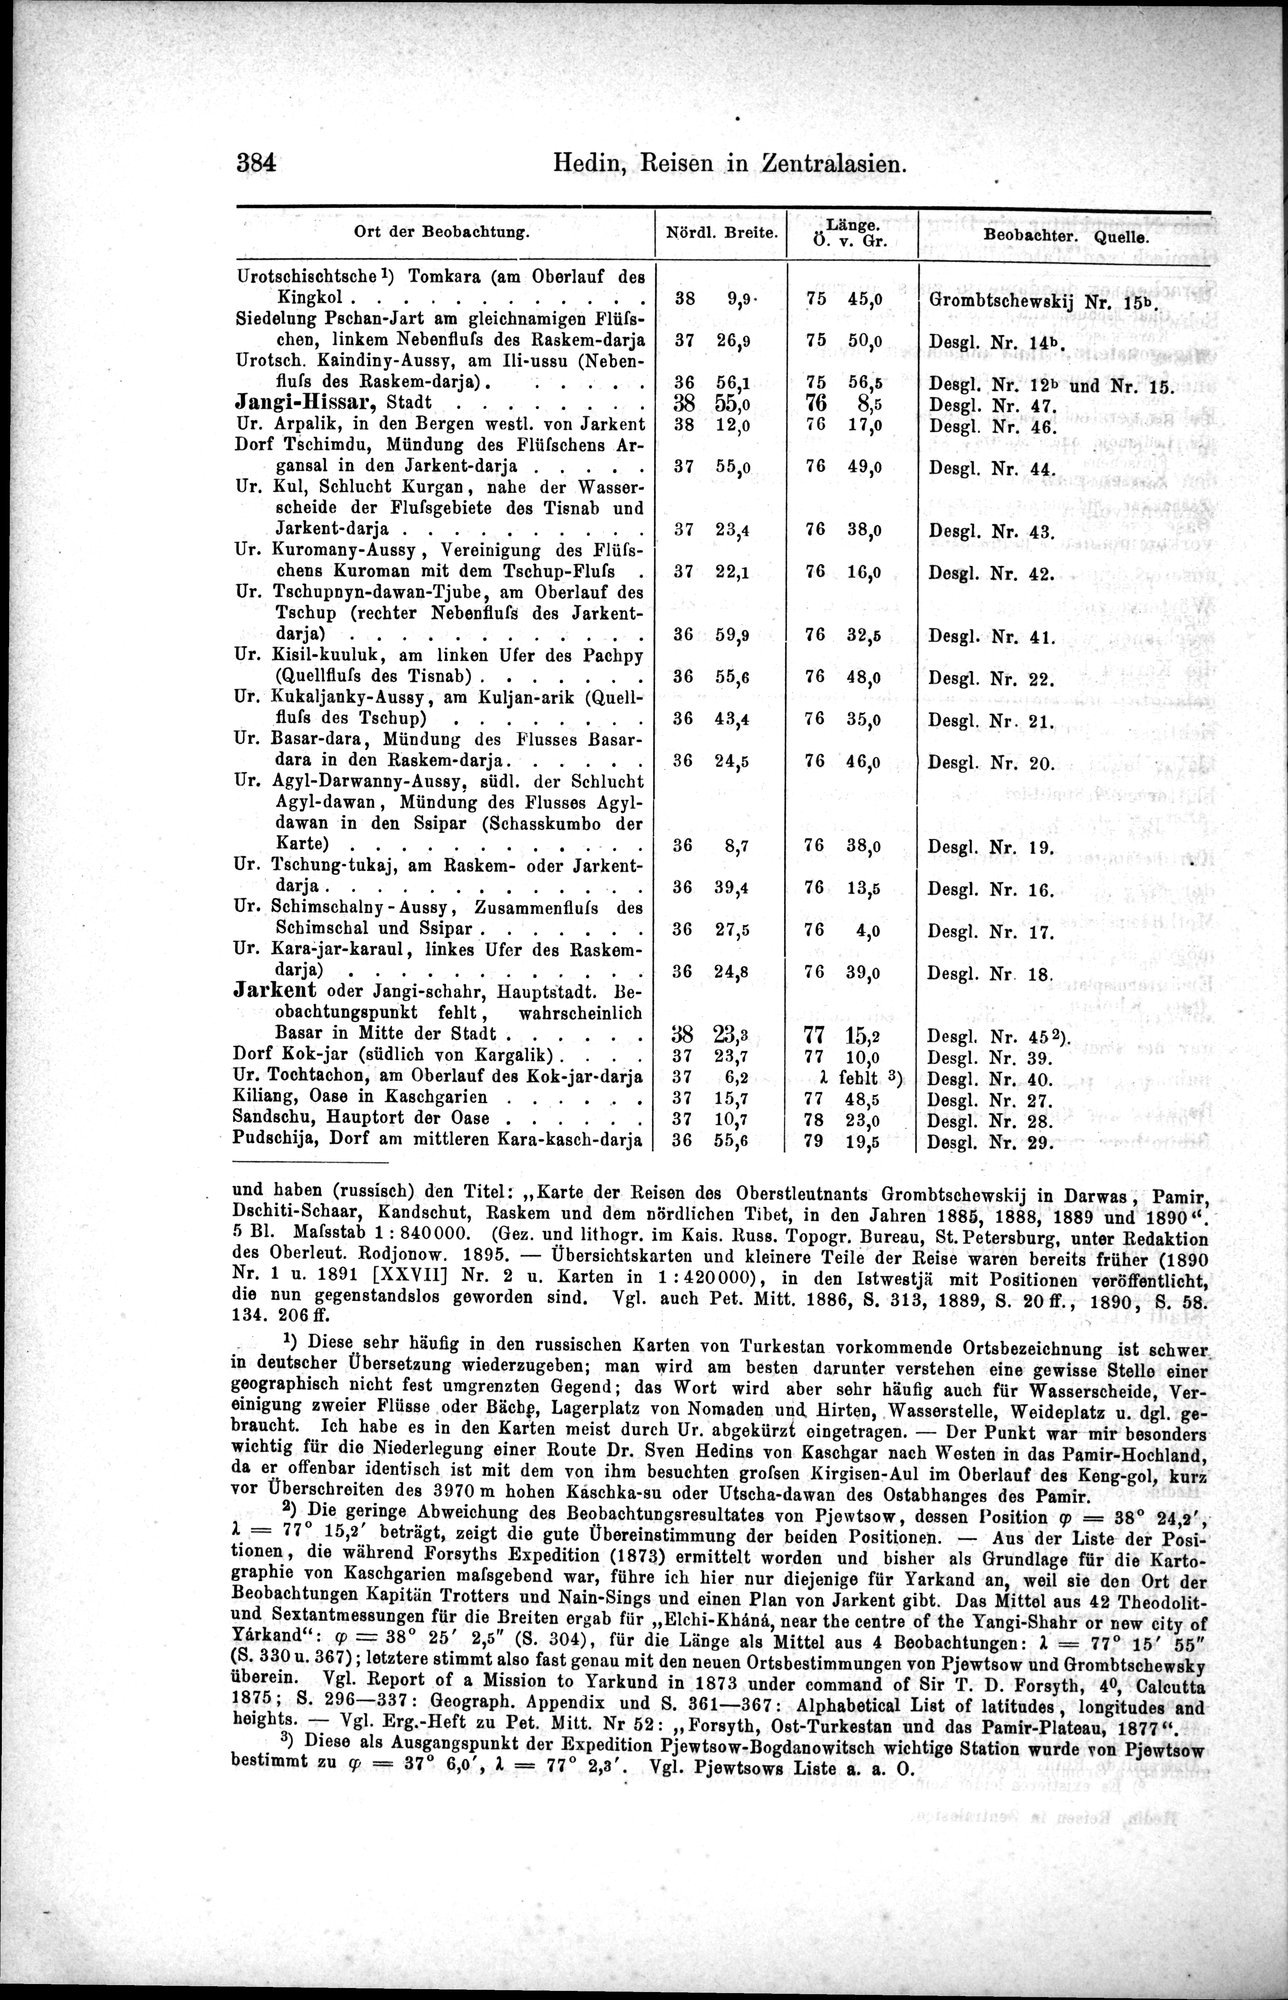 Die Geographische-Wissenschaftlichen Ergebnisse meiner Reisen in Zentralasien, 1894-1897 : vol.1 / Page 396 (Grayscale High Resolution Image)